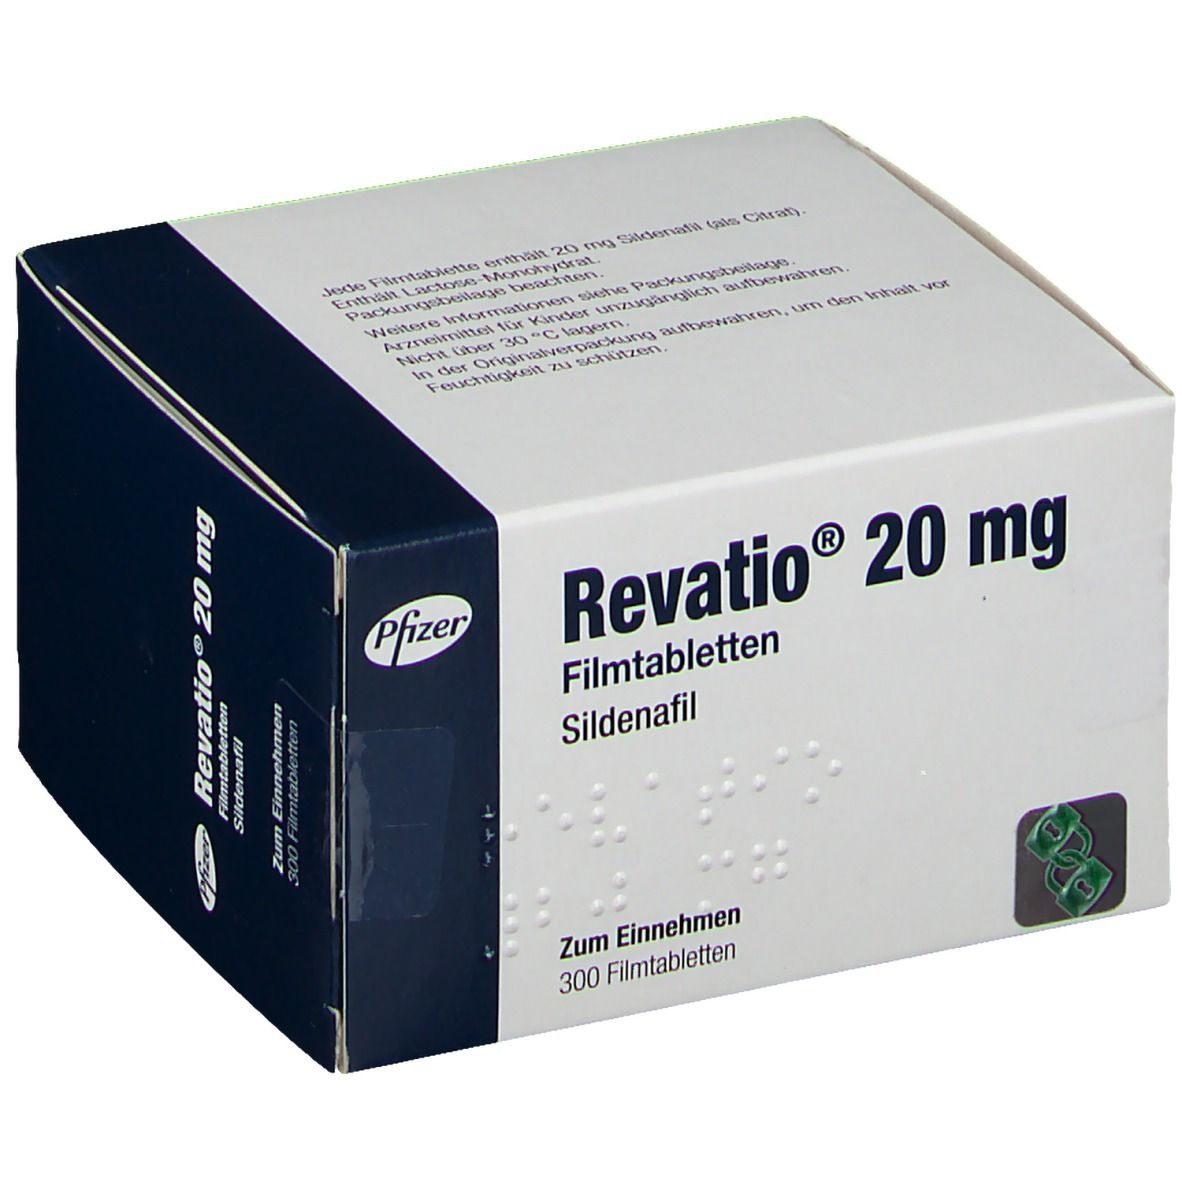 Revatio® 20 mg